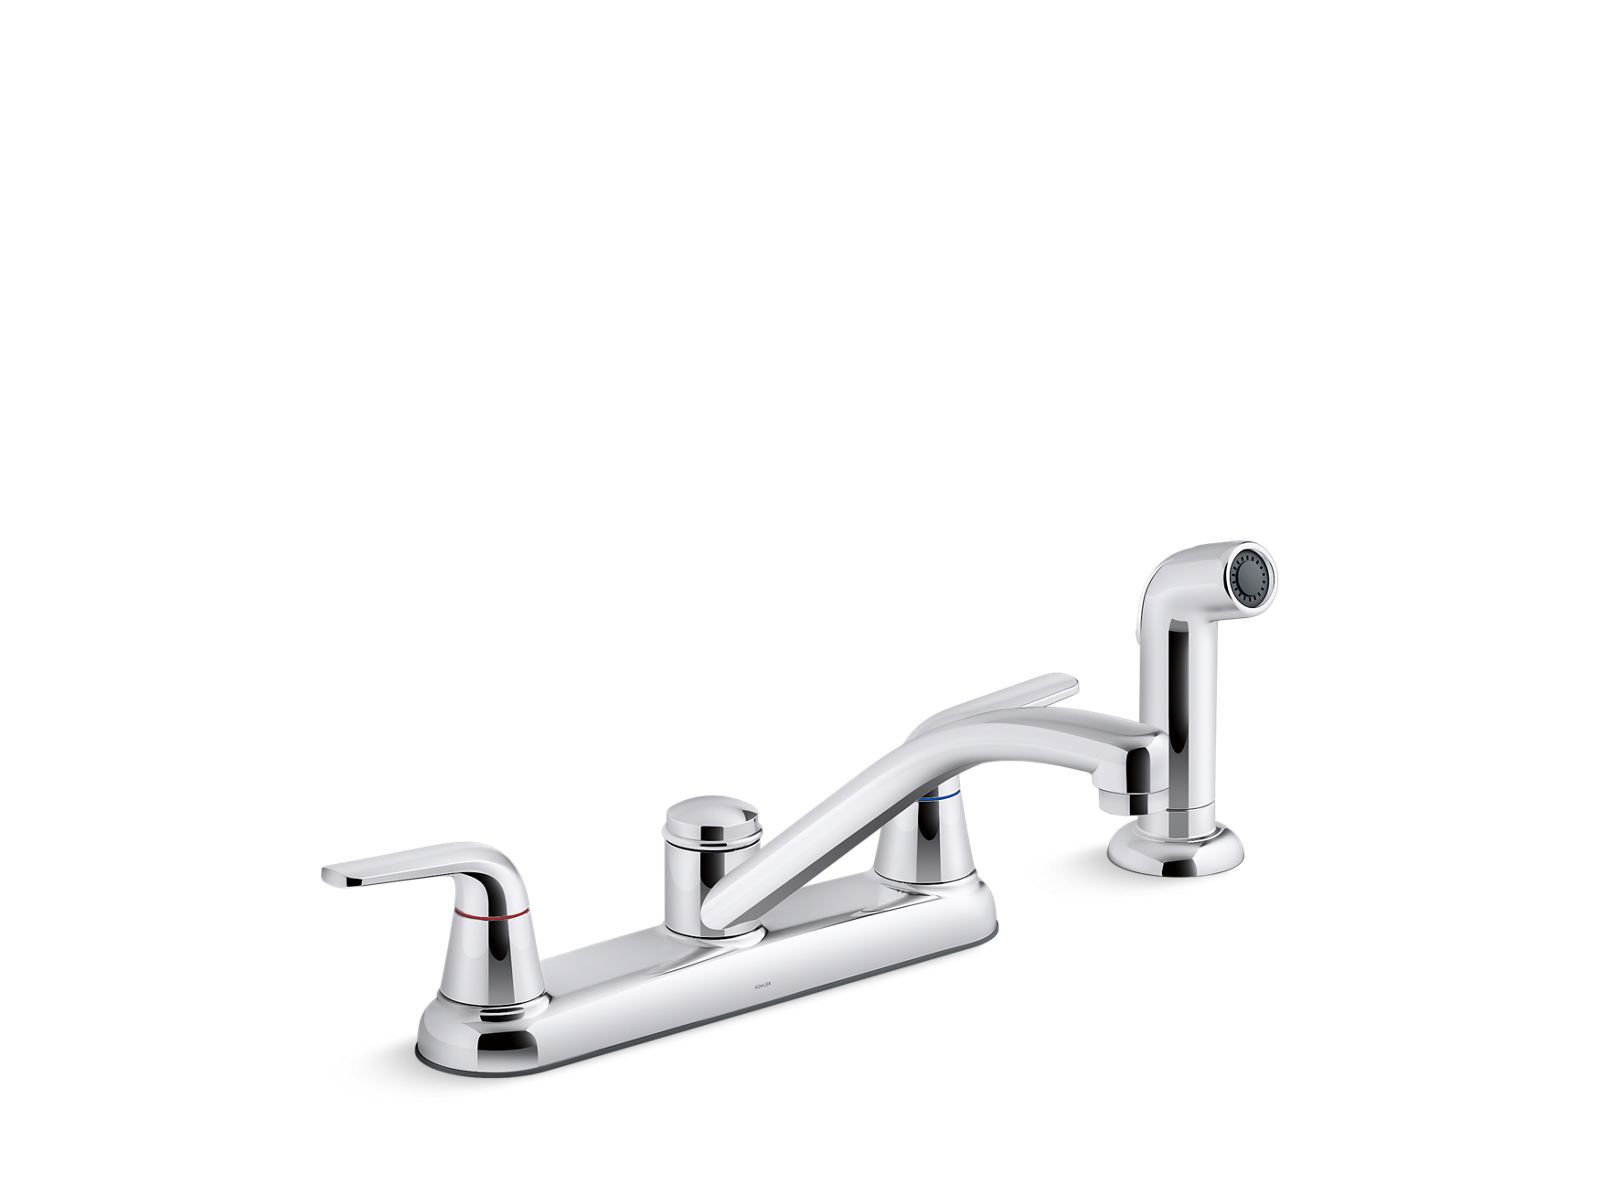 KOHLER K-30616 Jolt Two-handle kitchen sink faucet with side sprayer